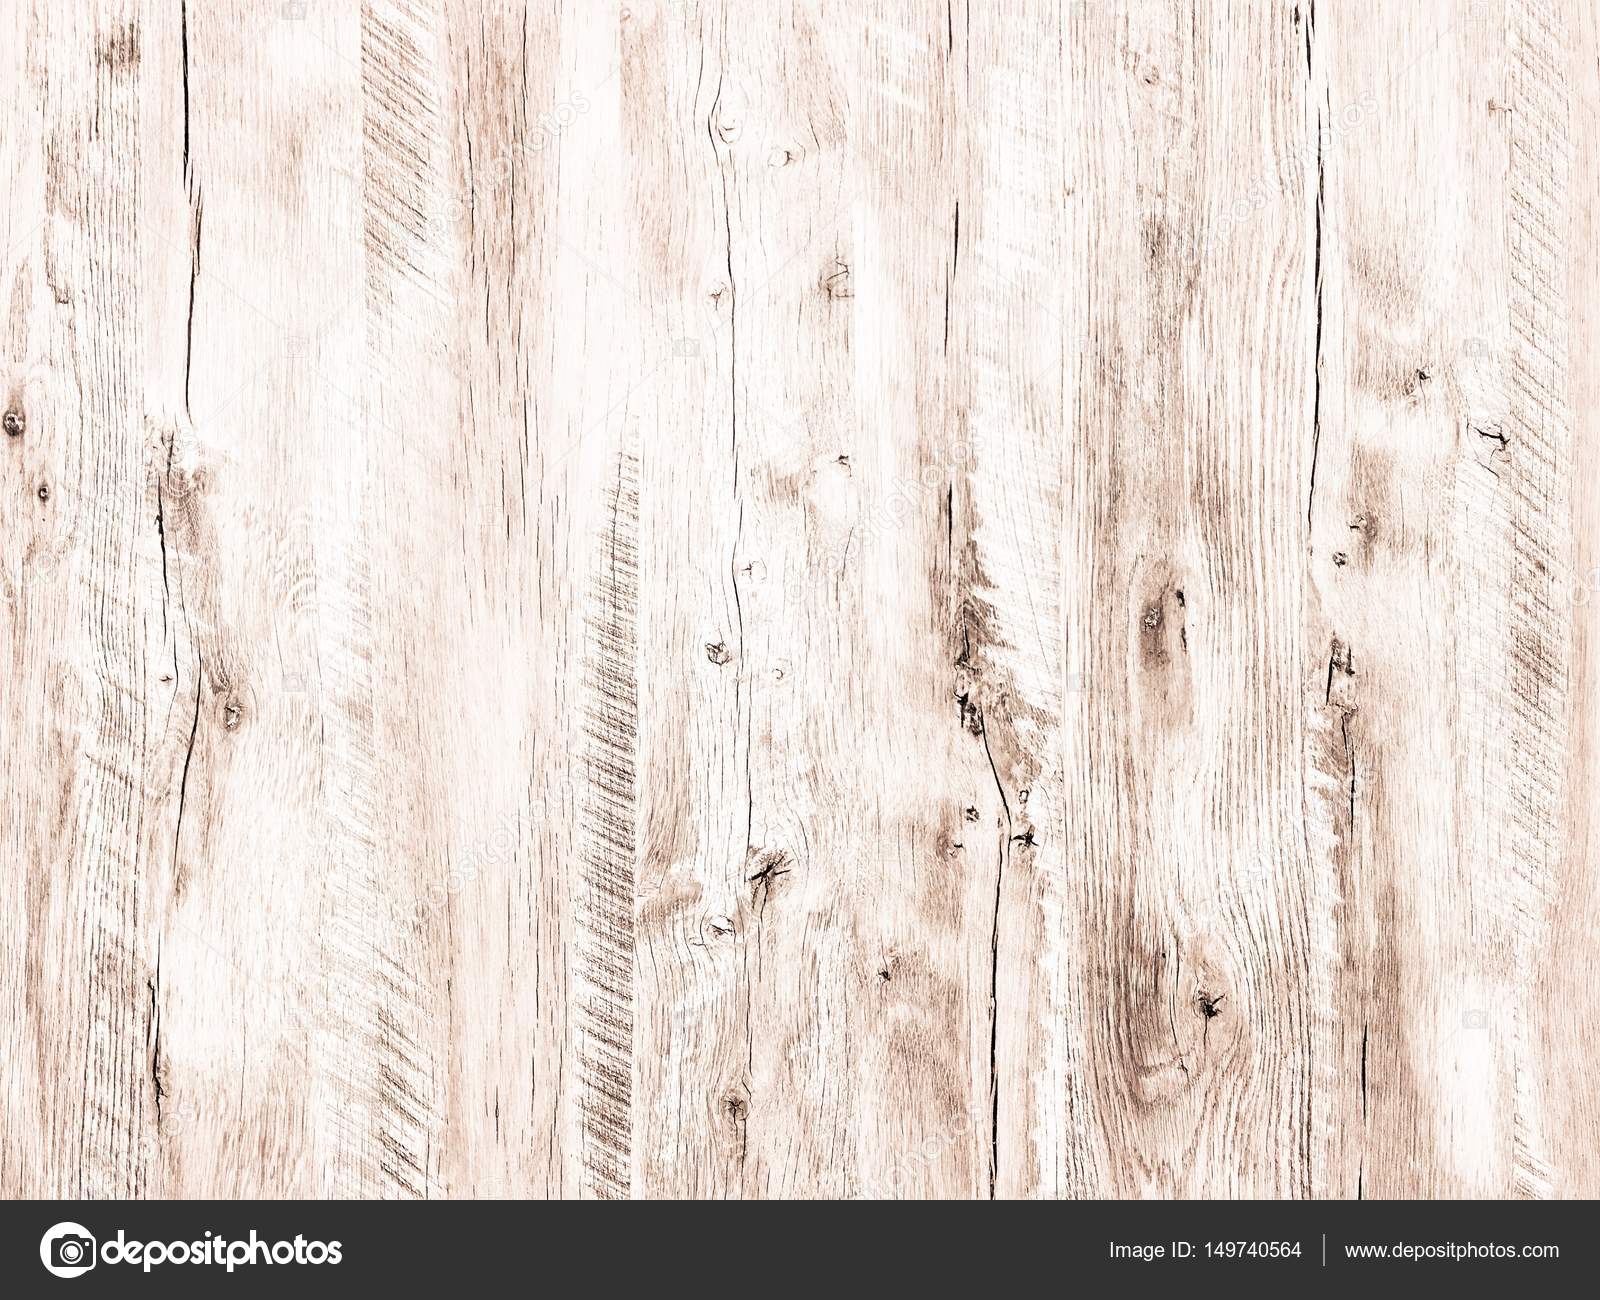 Nếu bạn đang muốn tìm một hình ảnh cổ động về gỗ, đừng bỏ qua bức ảnh này! Gỗ cũ, texture gỗ trắng kết hợp với nền gỗ sáng tạo nên một ảnh cổ phiếu đầy đặn hơn bao giờ hết.